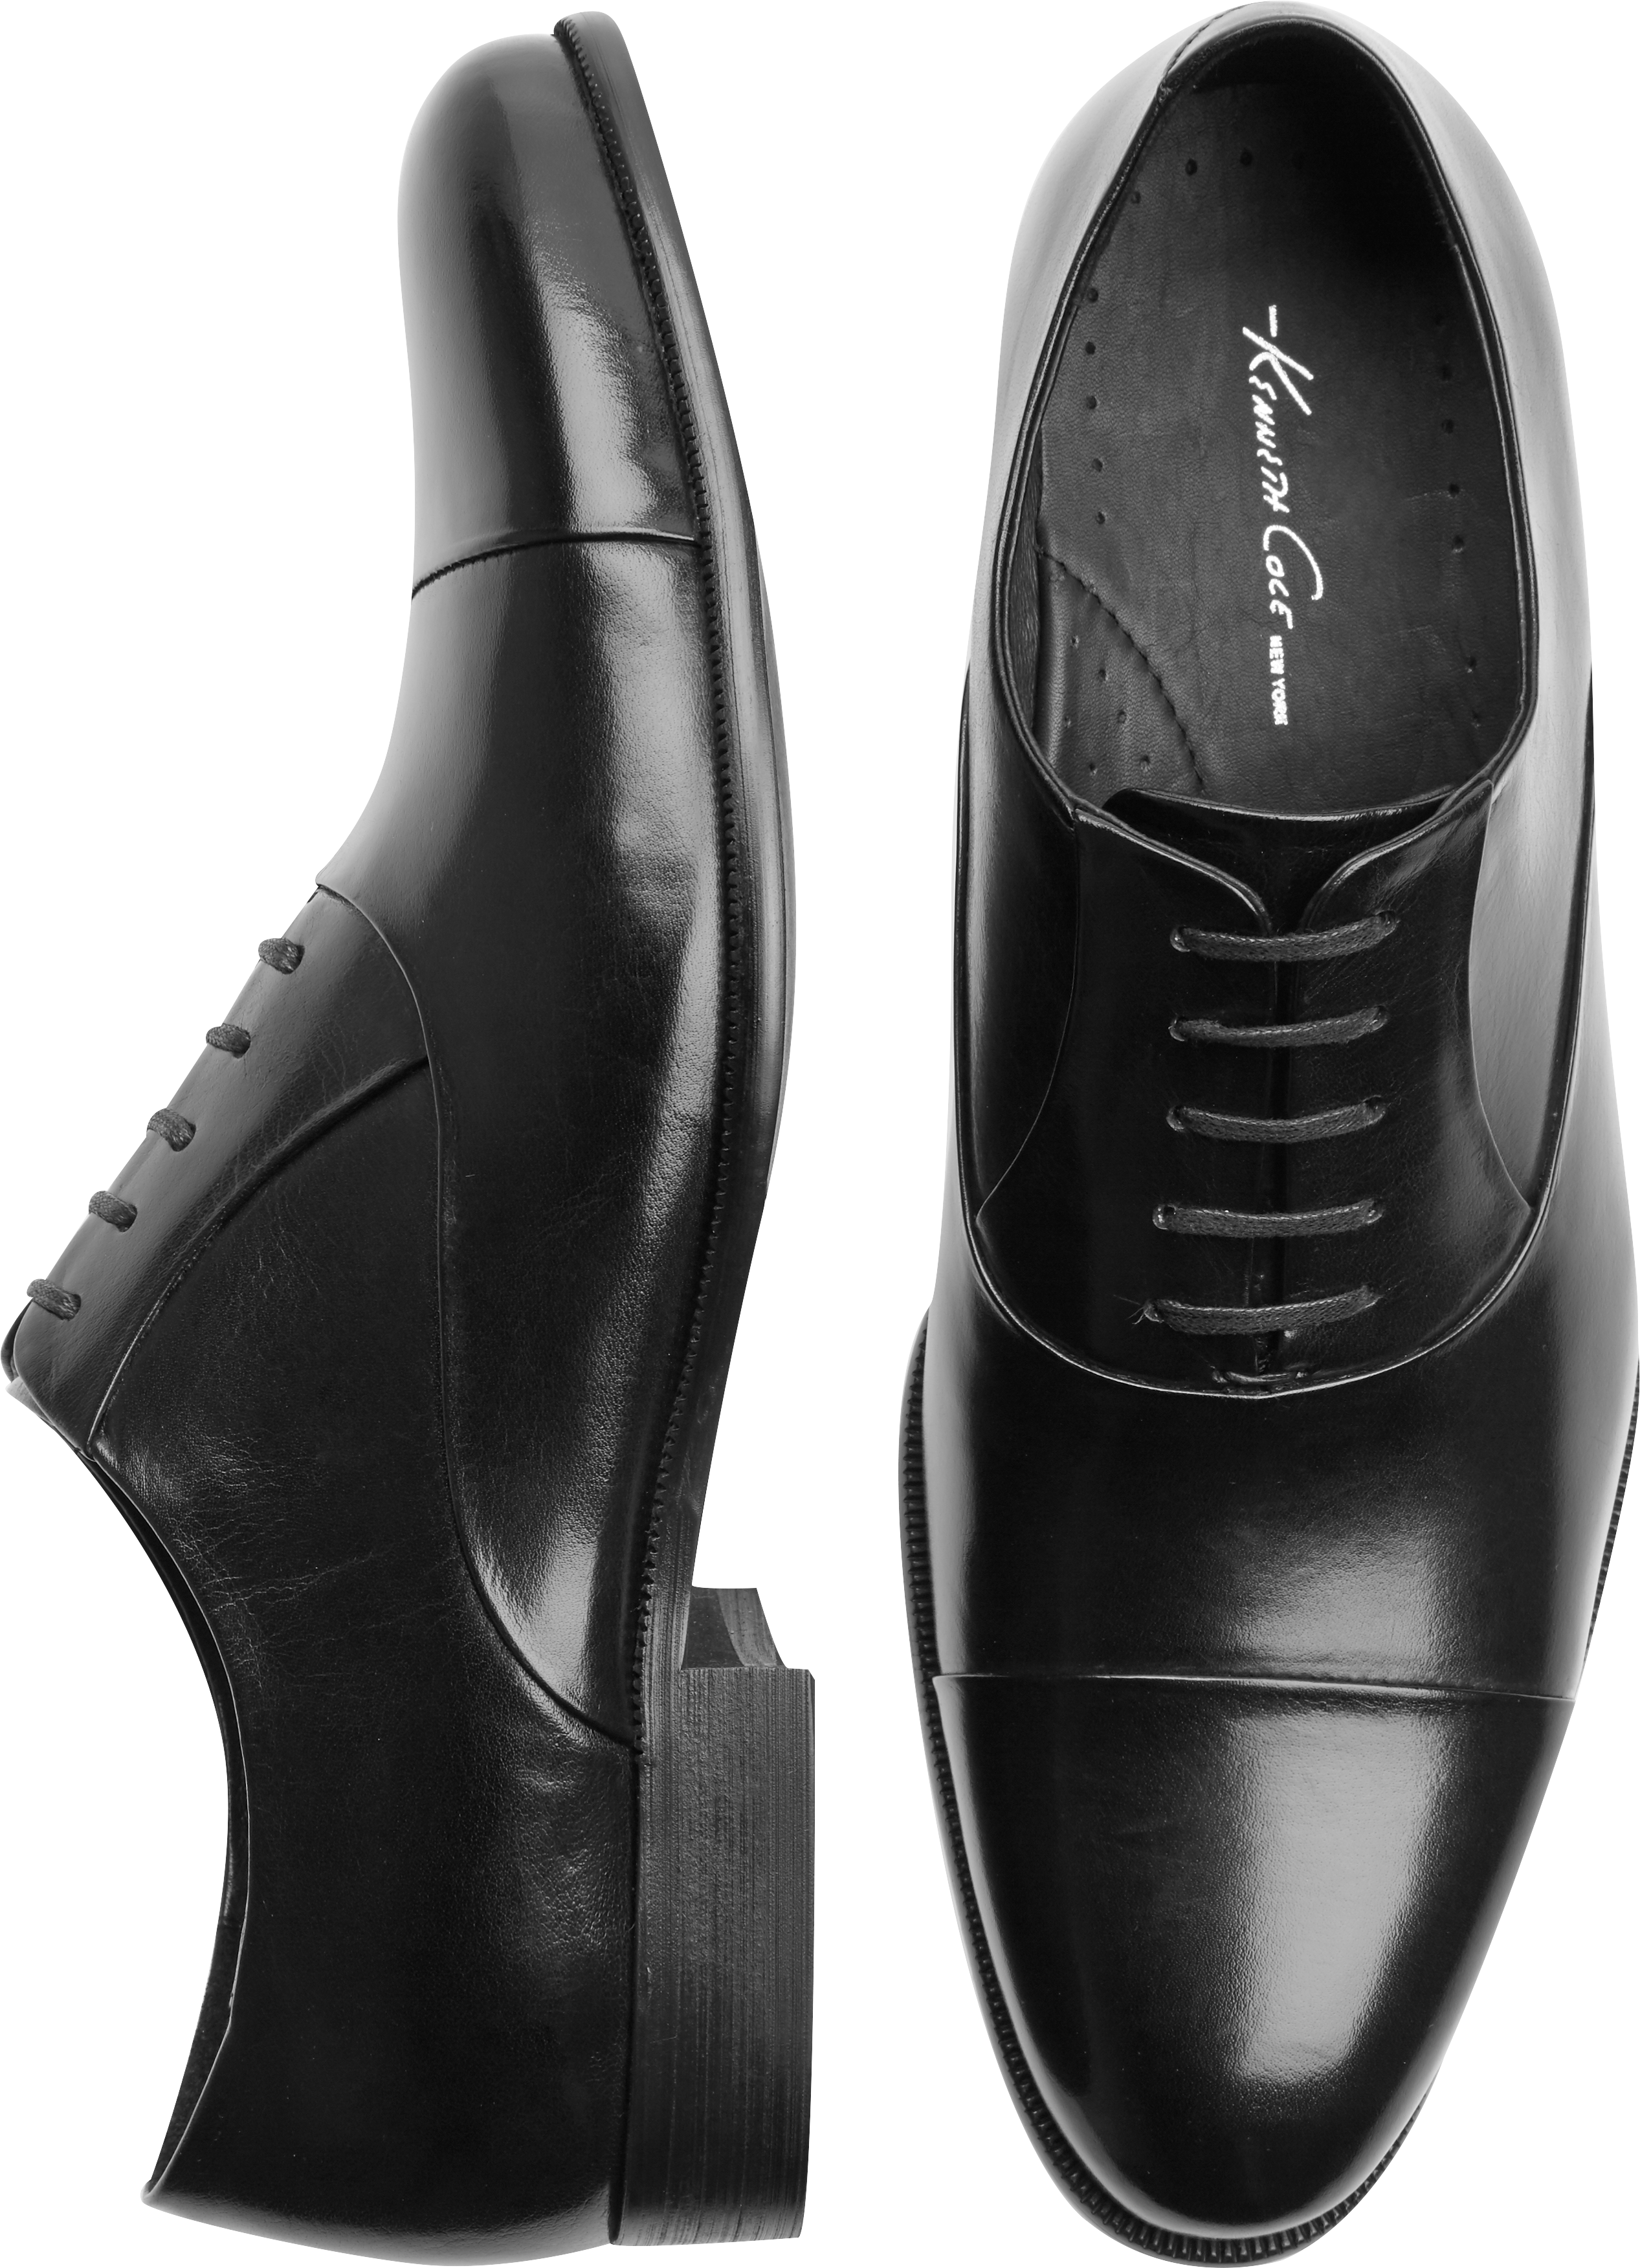 Kenneth Cole Command Chief Black Dress Shoe - Men's Sale | Men's Wearhouse